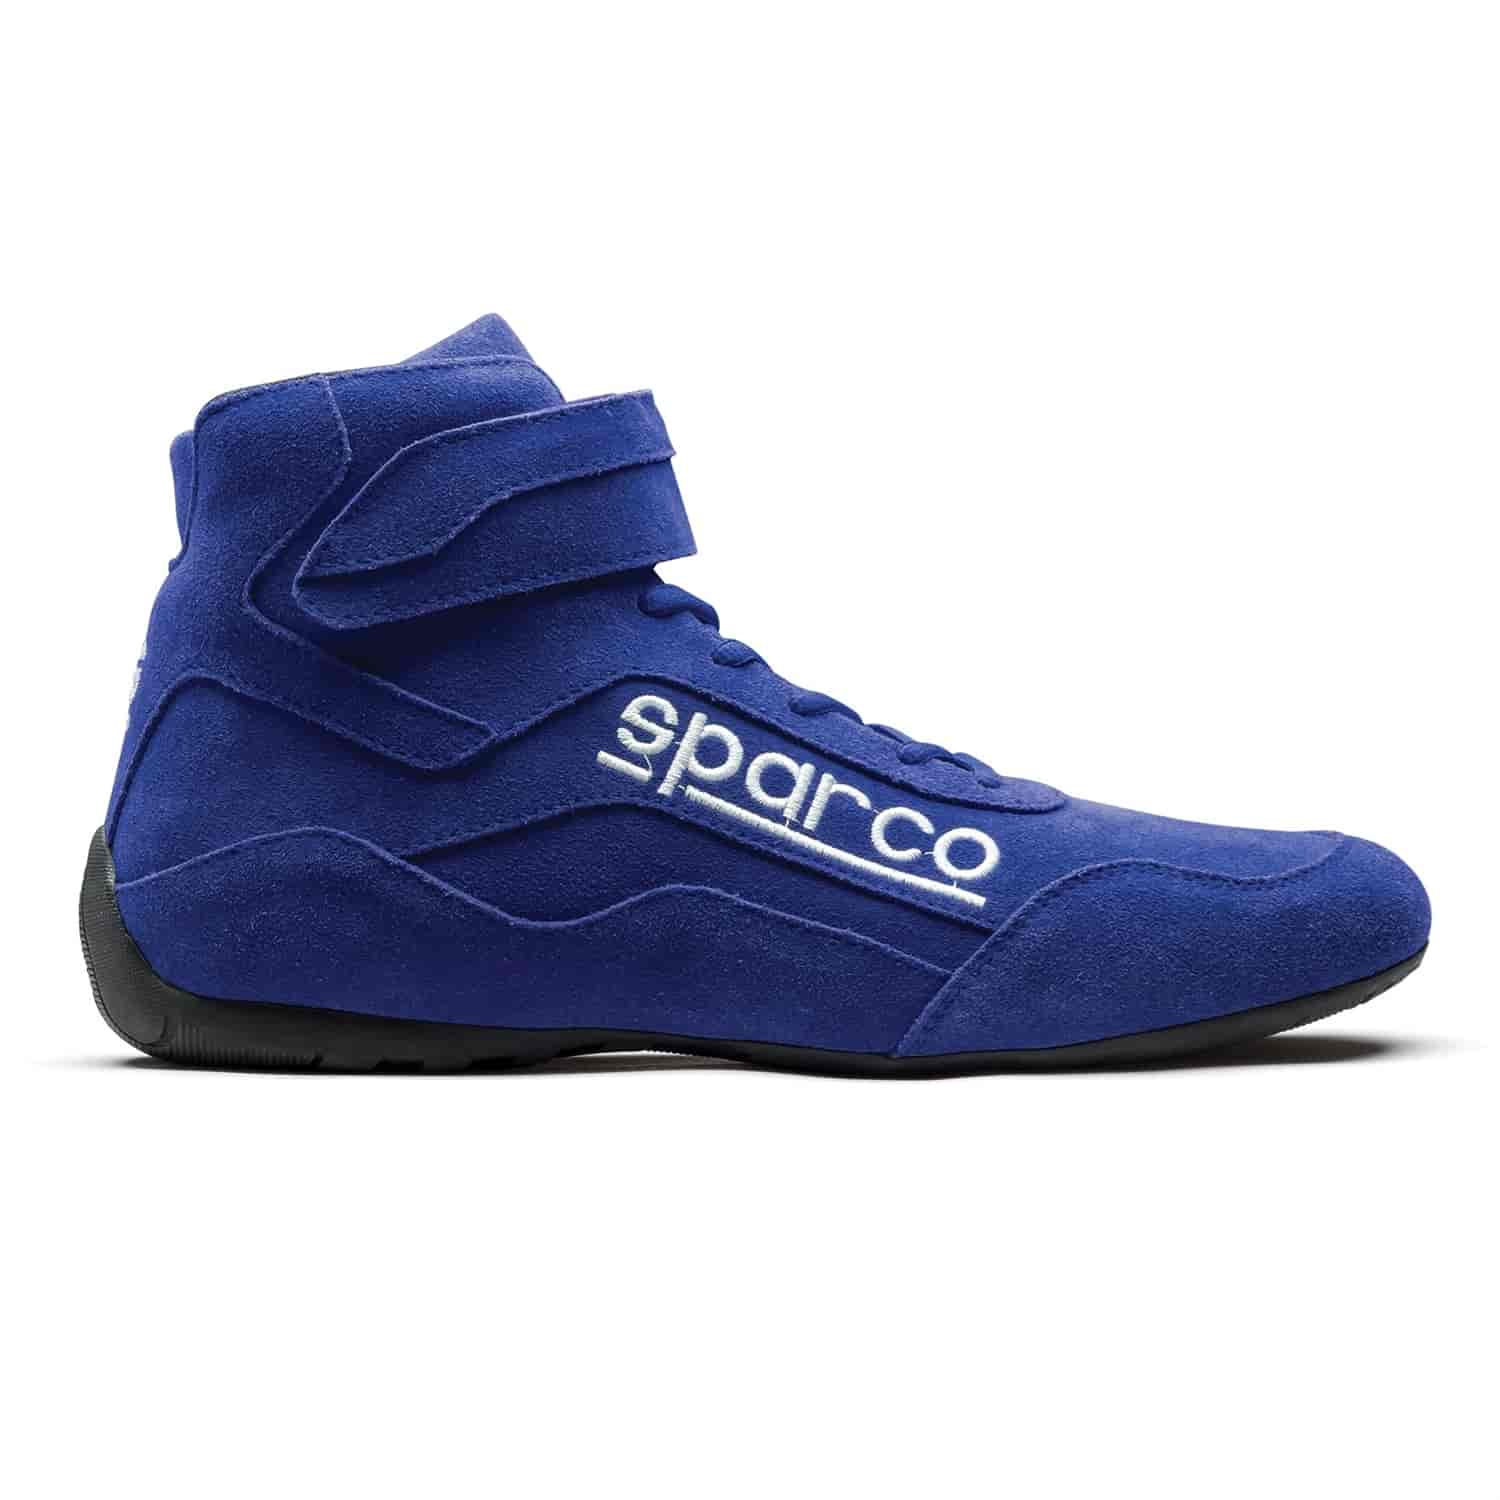 Race 2 Shoe Size 8 - Blue